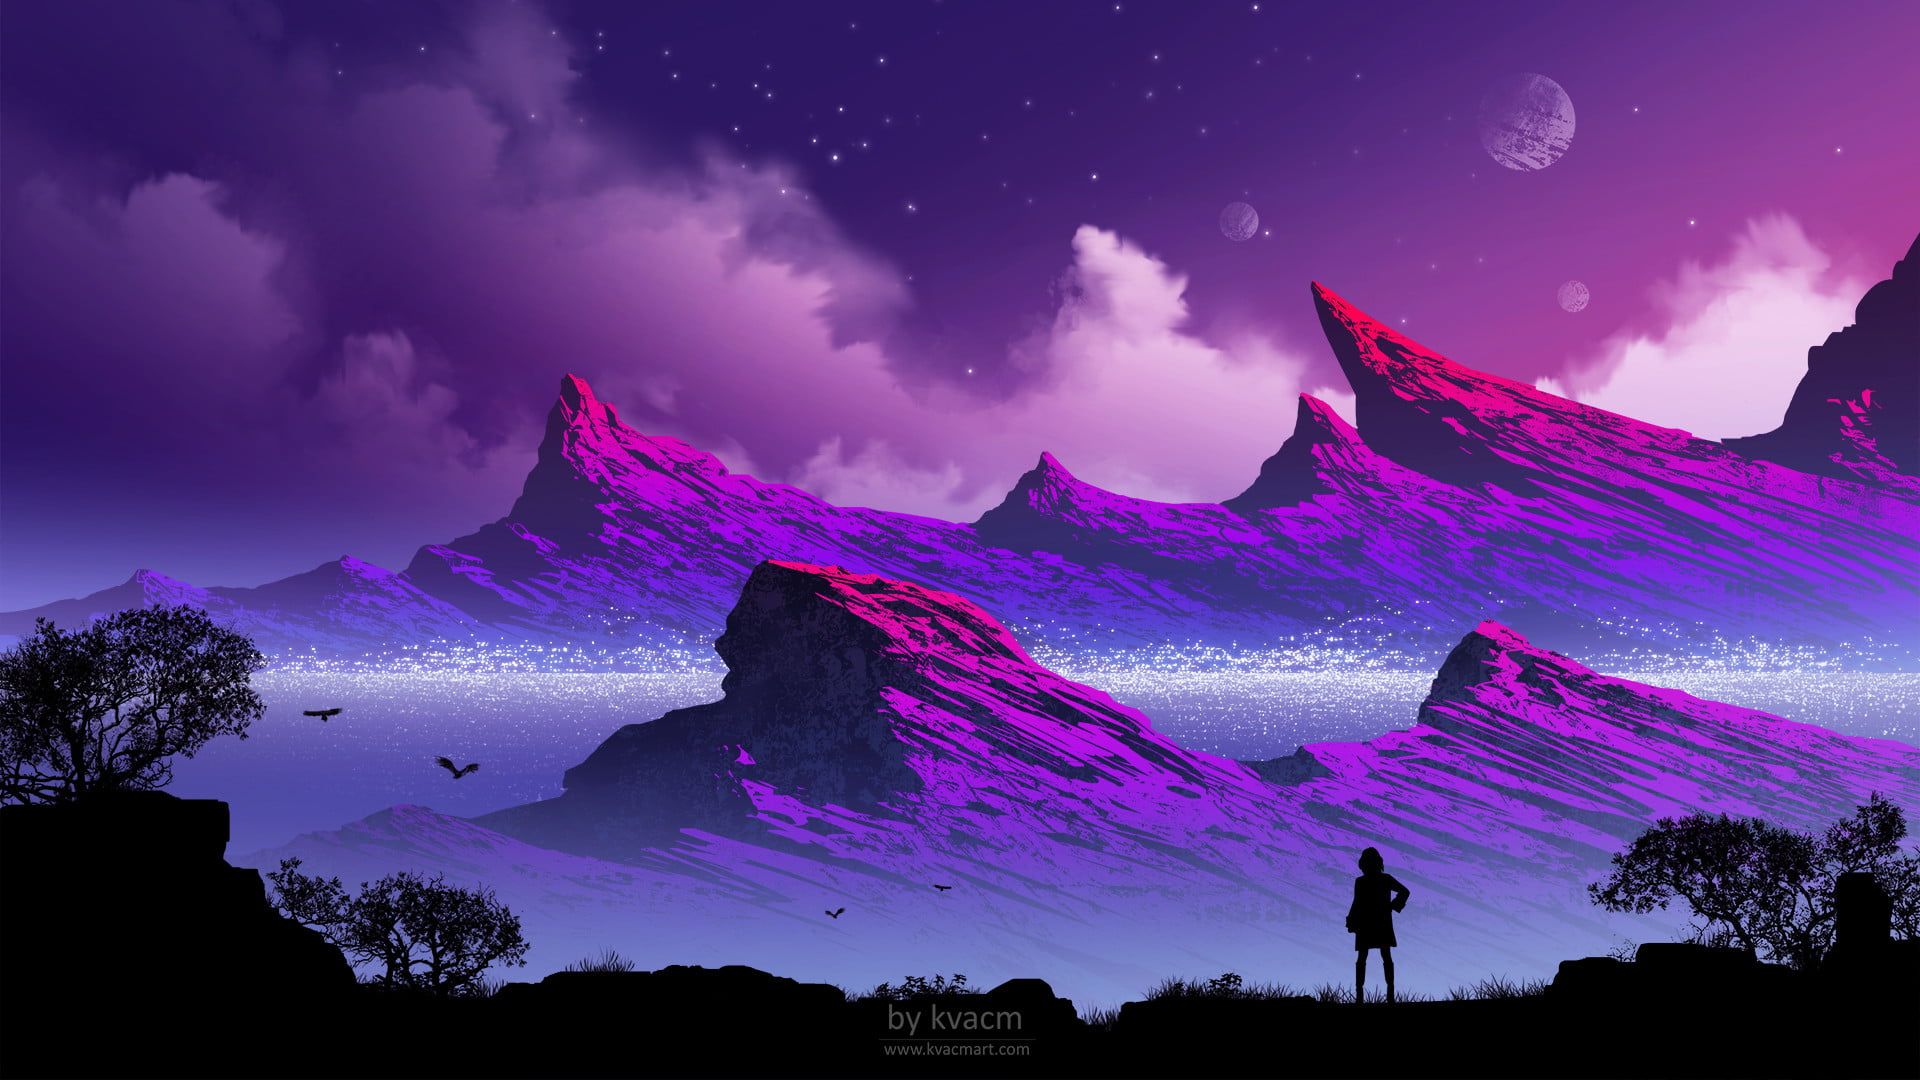 summit painting #illustration #Kvacm fantasy art #mountains purple background P #wallpaper #hdwa. Papel de parede pc, Paisagem fantasia, Papel de parede roxo